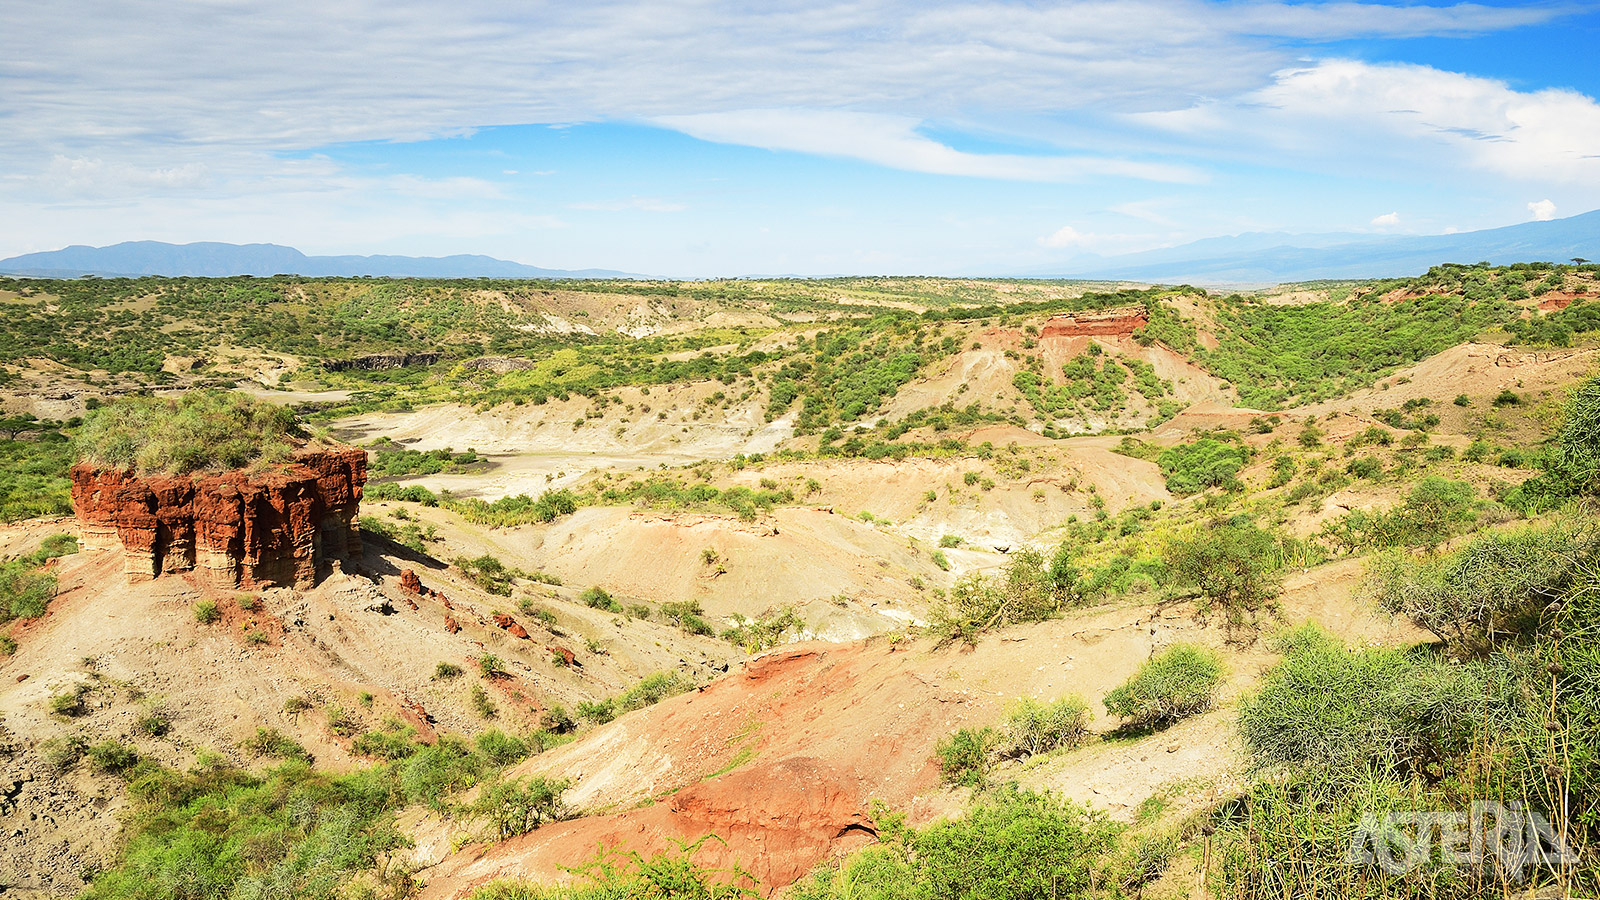 In 1972 werden in Olduvai Gorge voetstappen van mensen gevonden die dateren van 3,5 miljoen jaar geleden